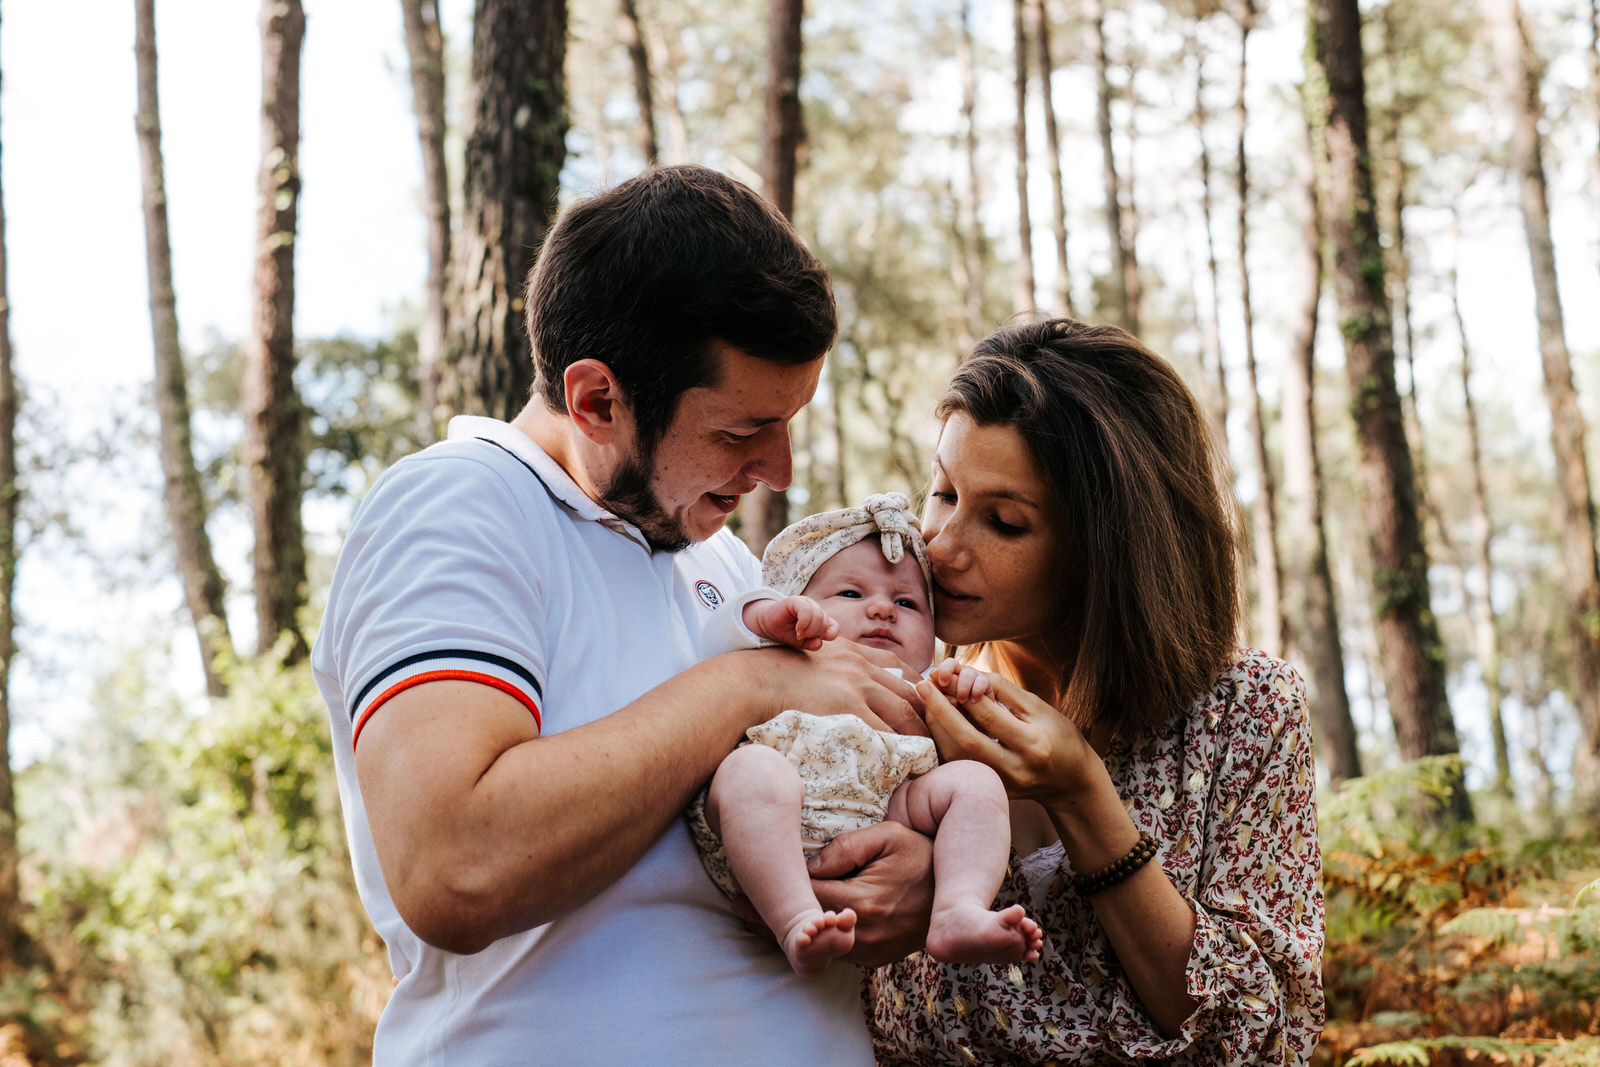 Photographe famille grossesse nouveau-né Landes Dax- Van Porge 7 200x300 30A Q01